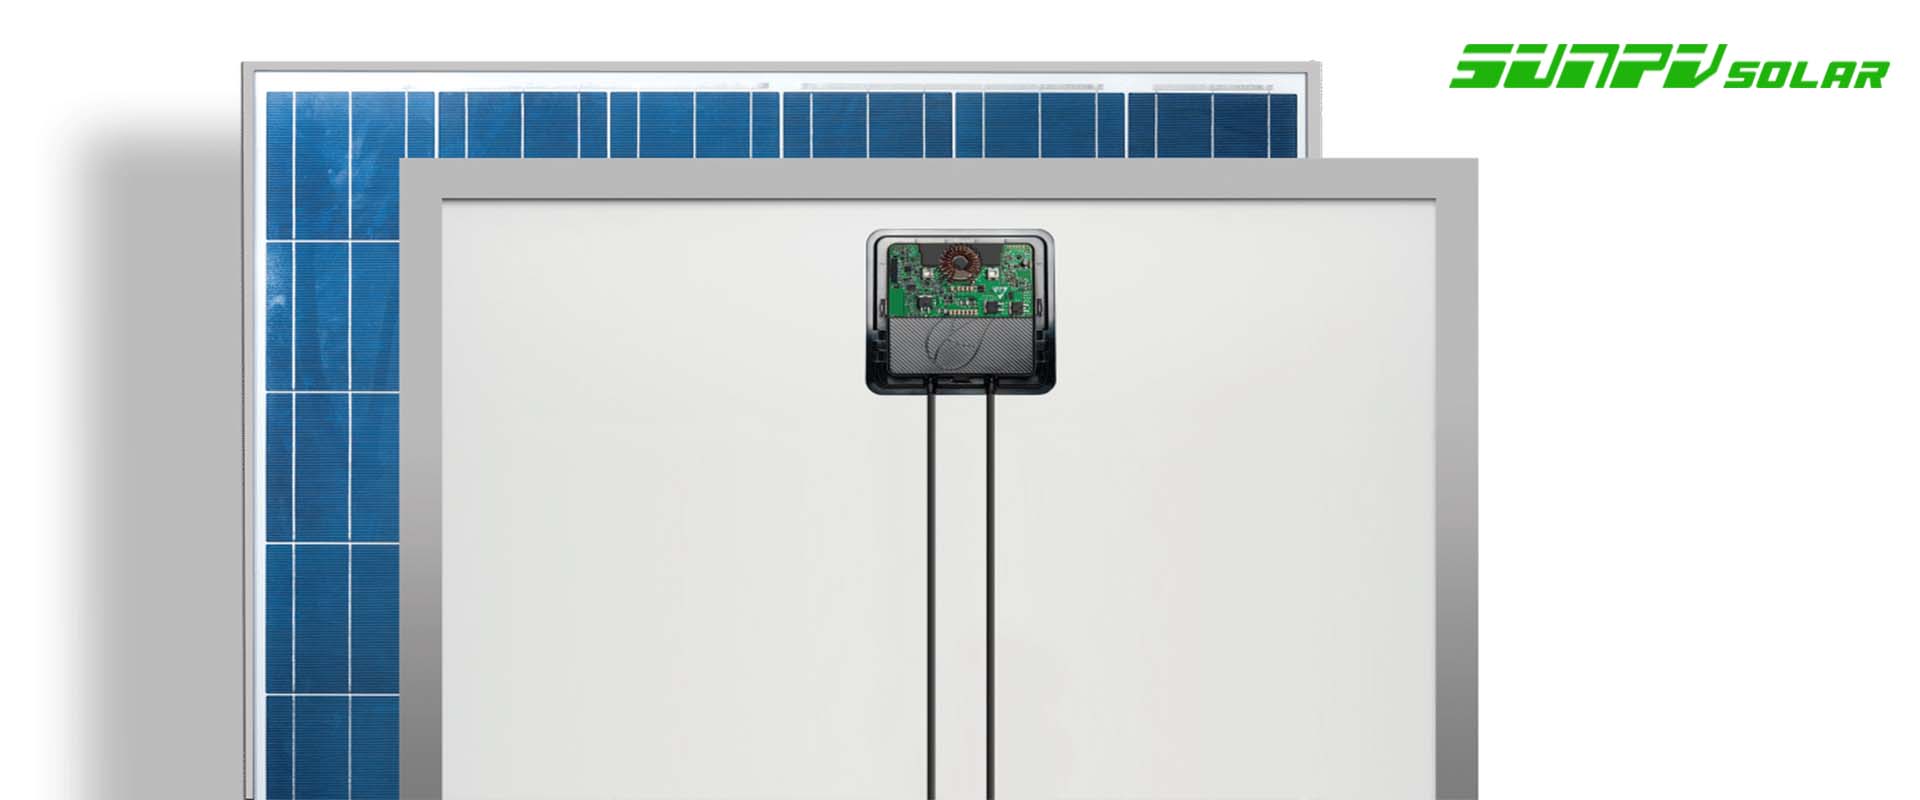 solar power optimizer 600w 800w 20A